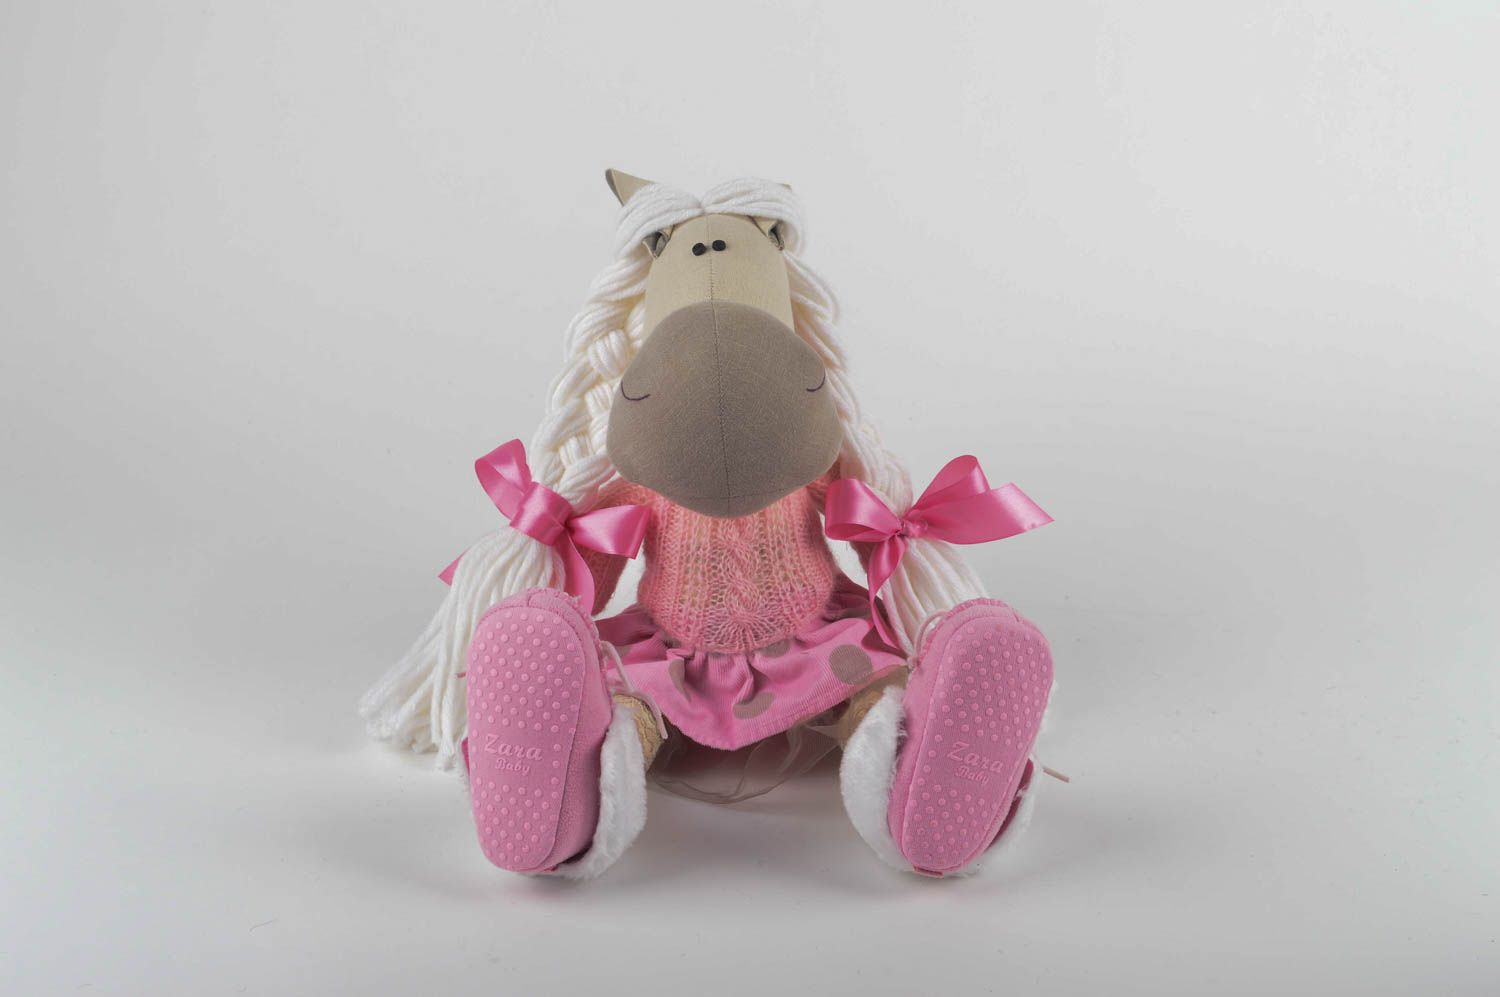 Игрушка лошадка хэнд мэйд детская игрушка из льна мягкая игрушка интересная фото 4